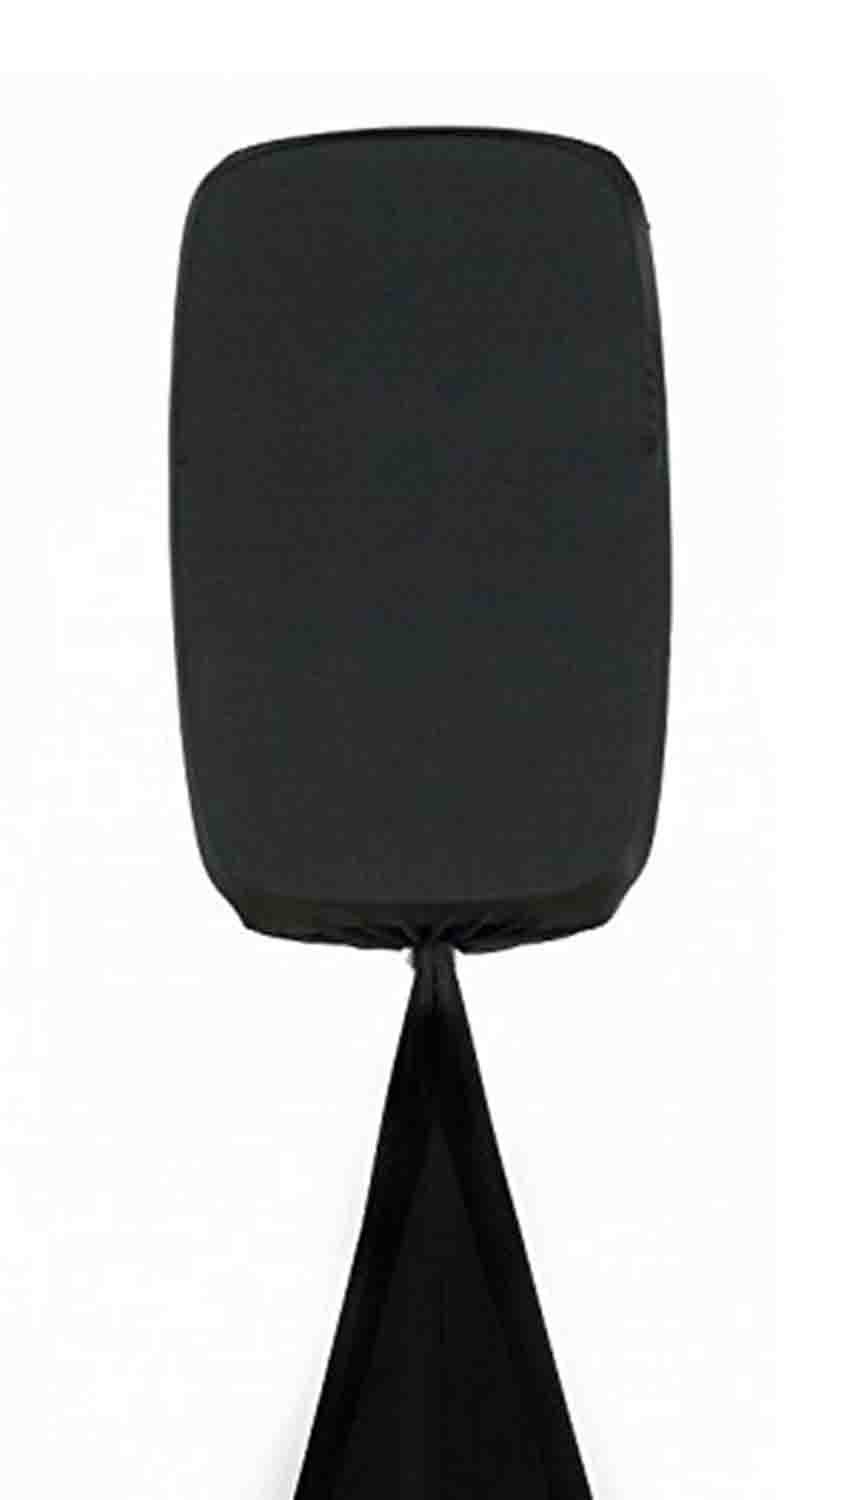 B-Stock: Scrim-King SS-CBNT002B, 10-12 inch Speaker Cab Scrim Scrim-King